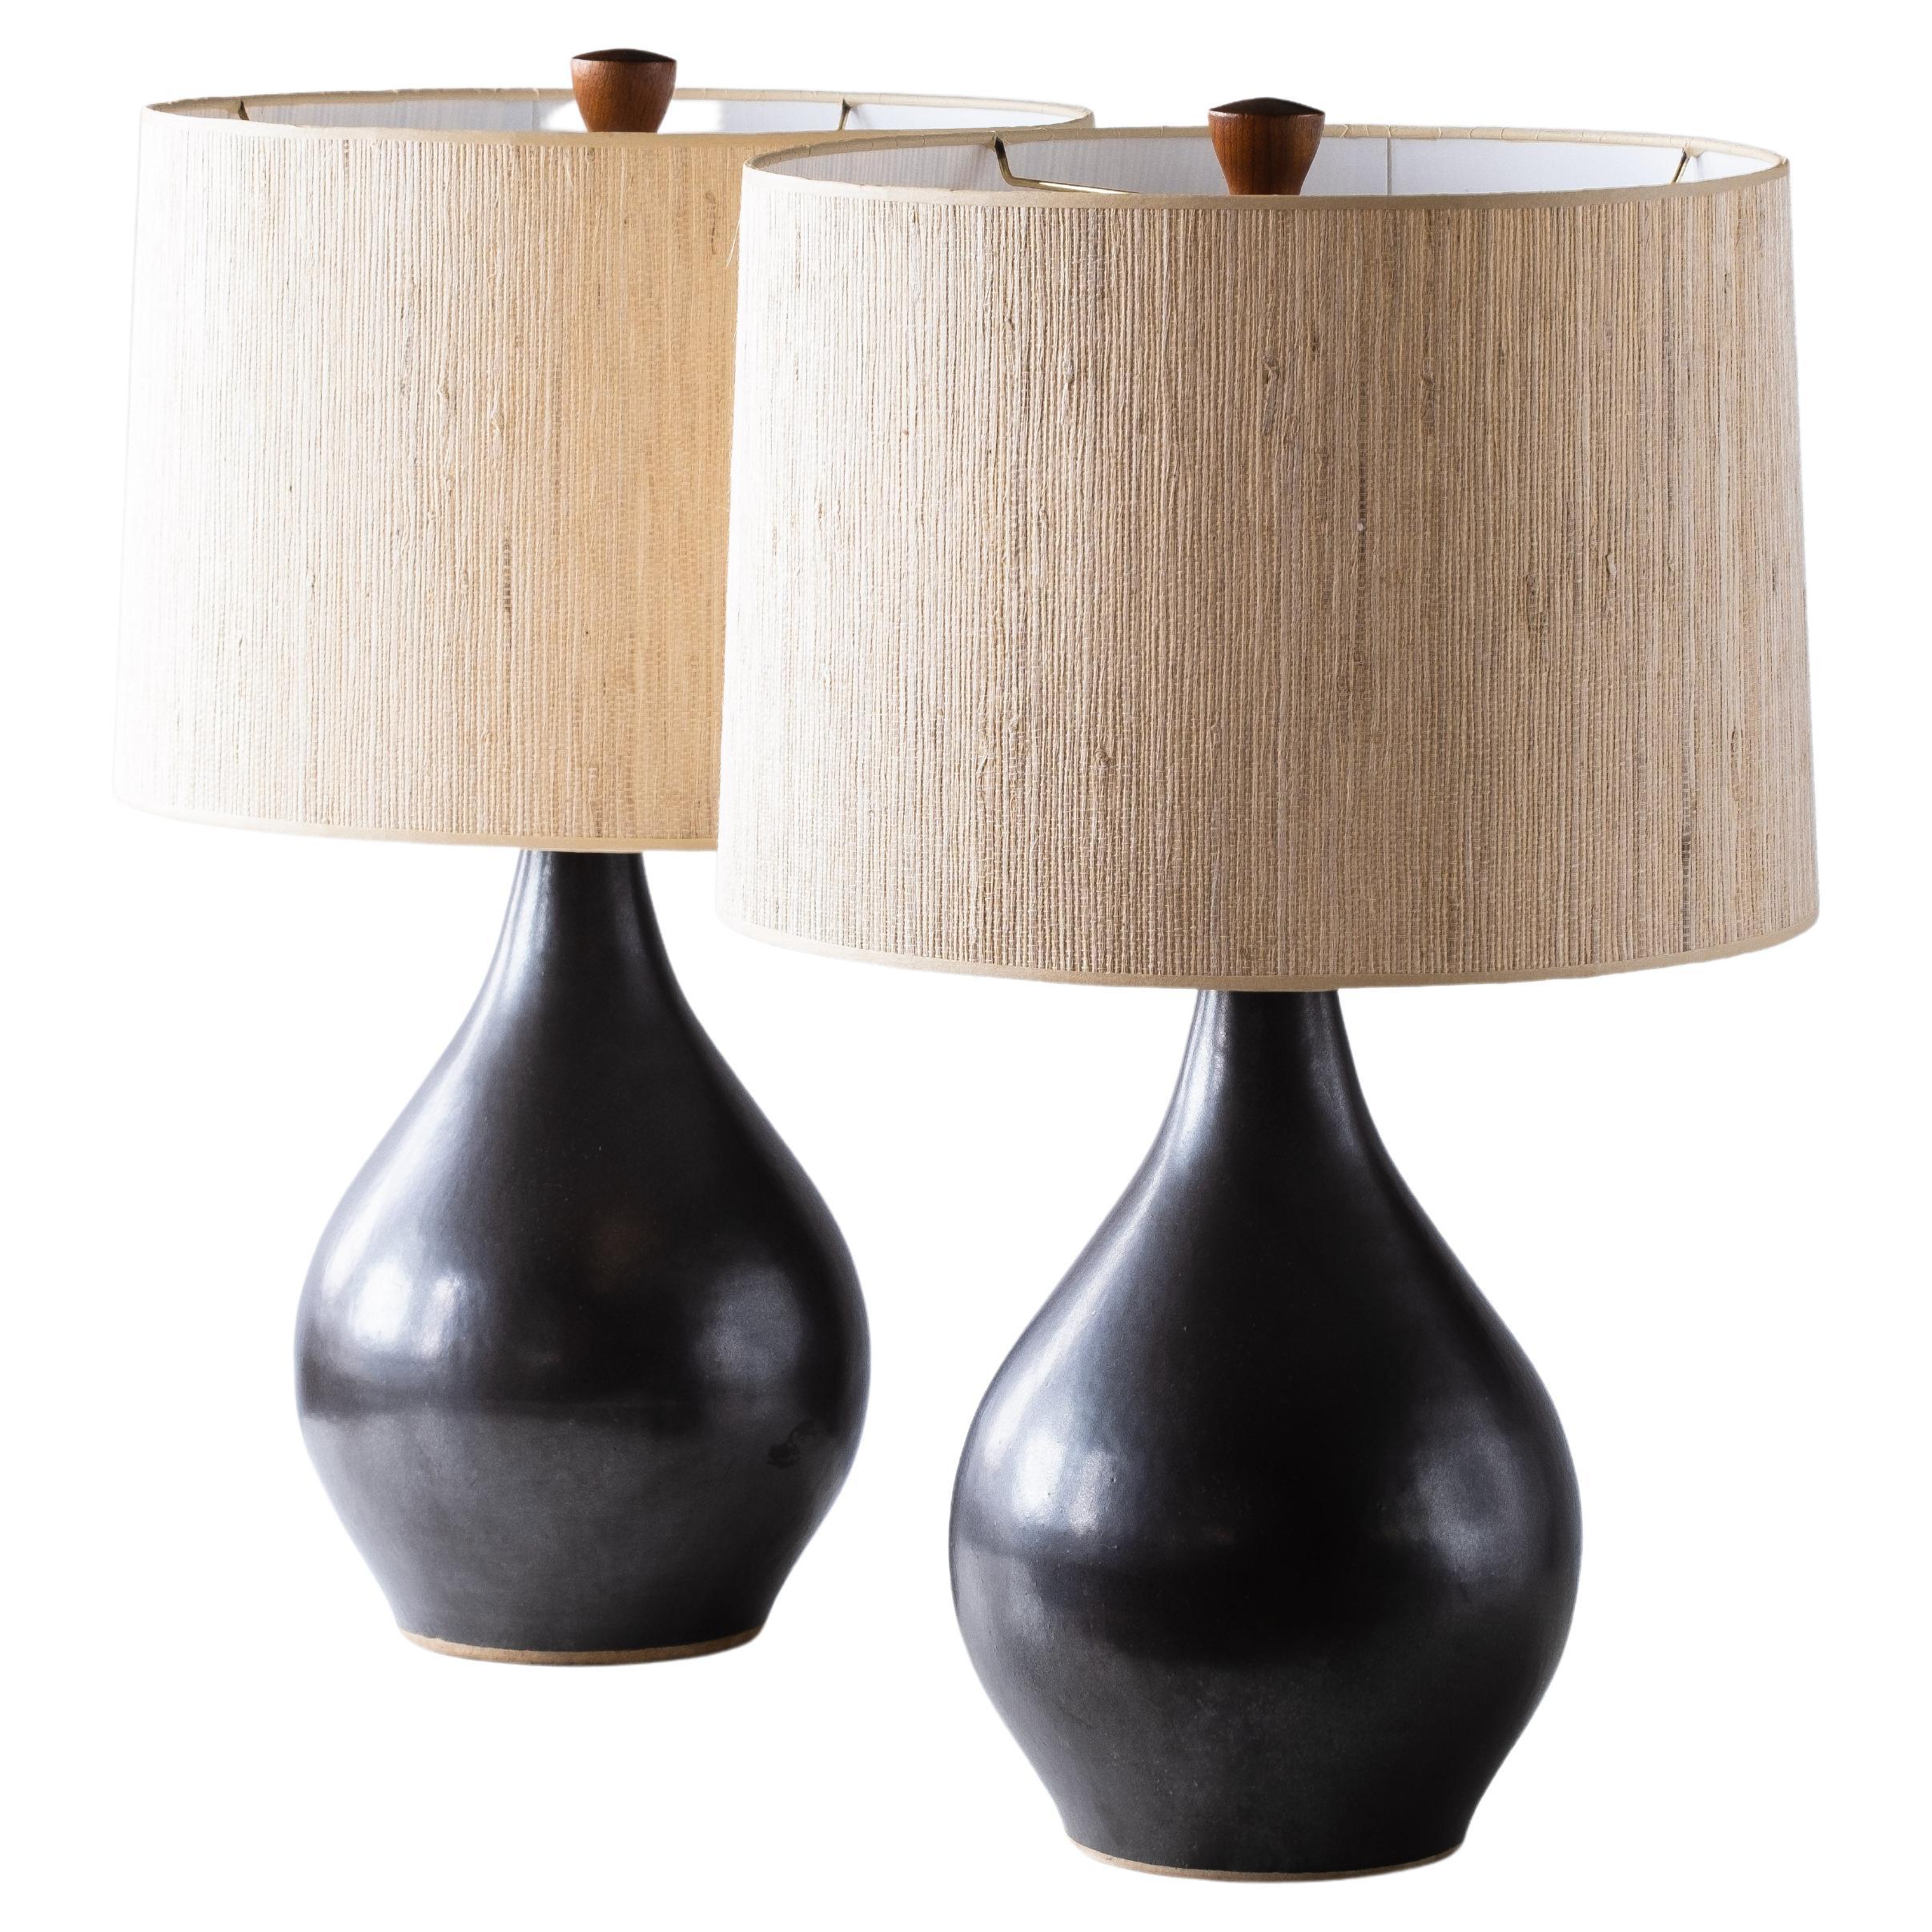 Gordon & Jane Martz / Marshall Studios - Lampes de table en céramique, glaçure noire bronze